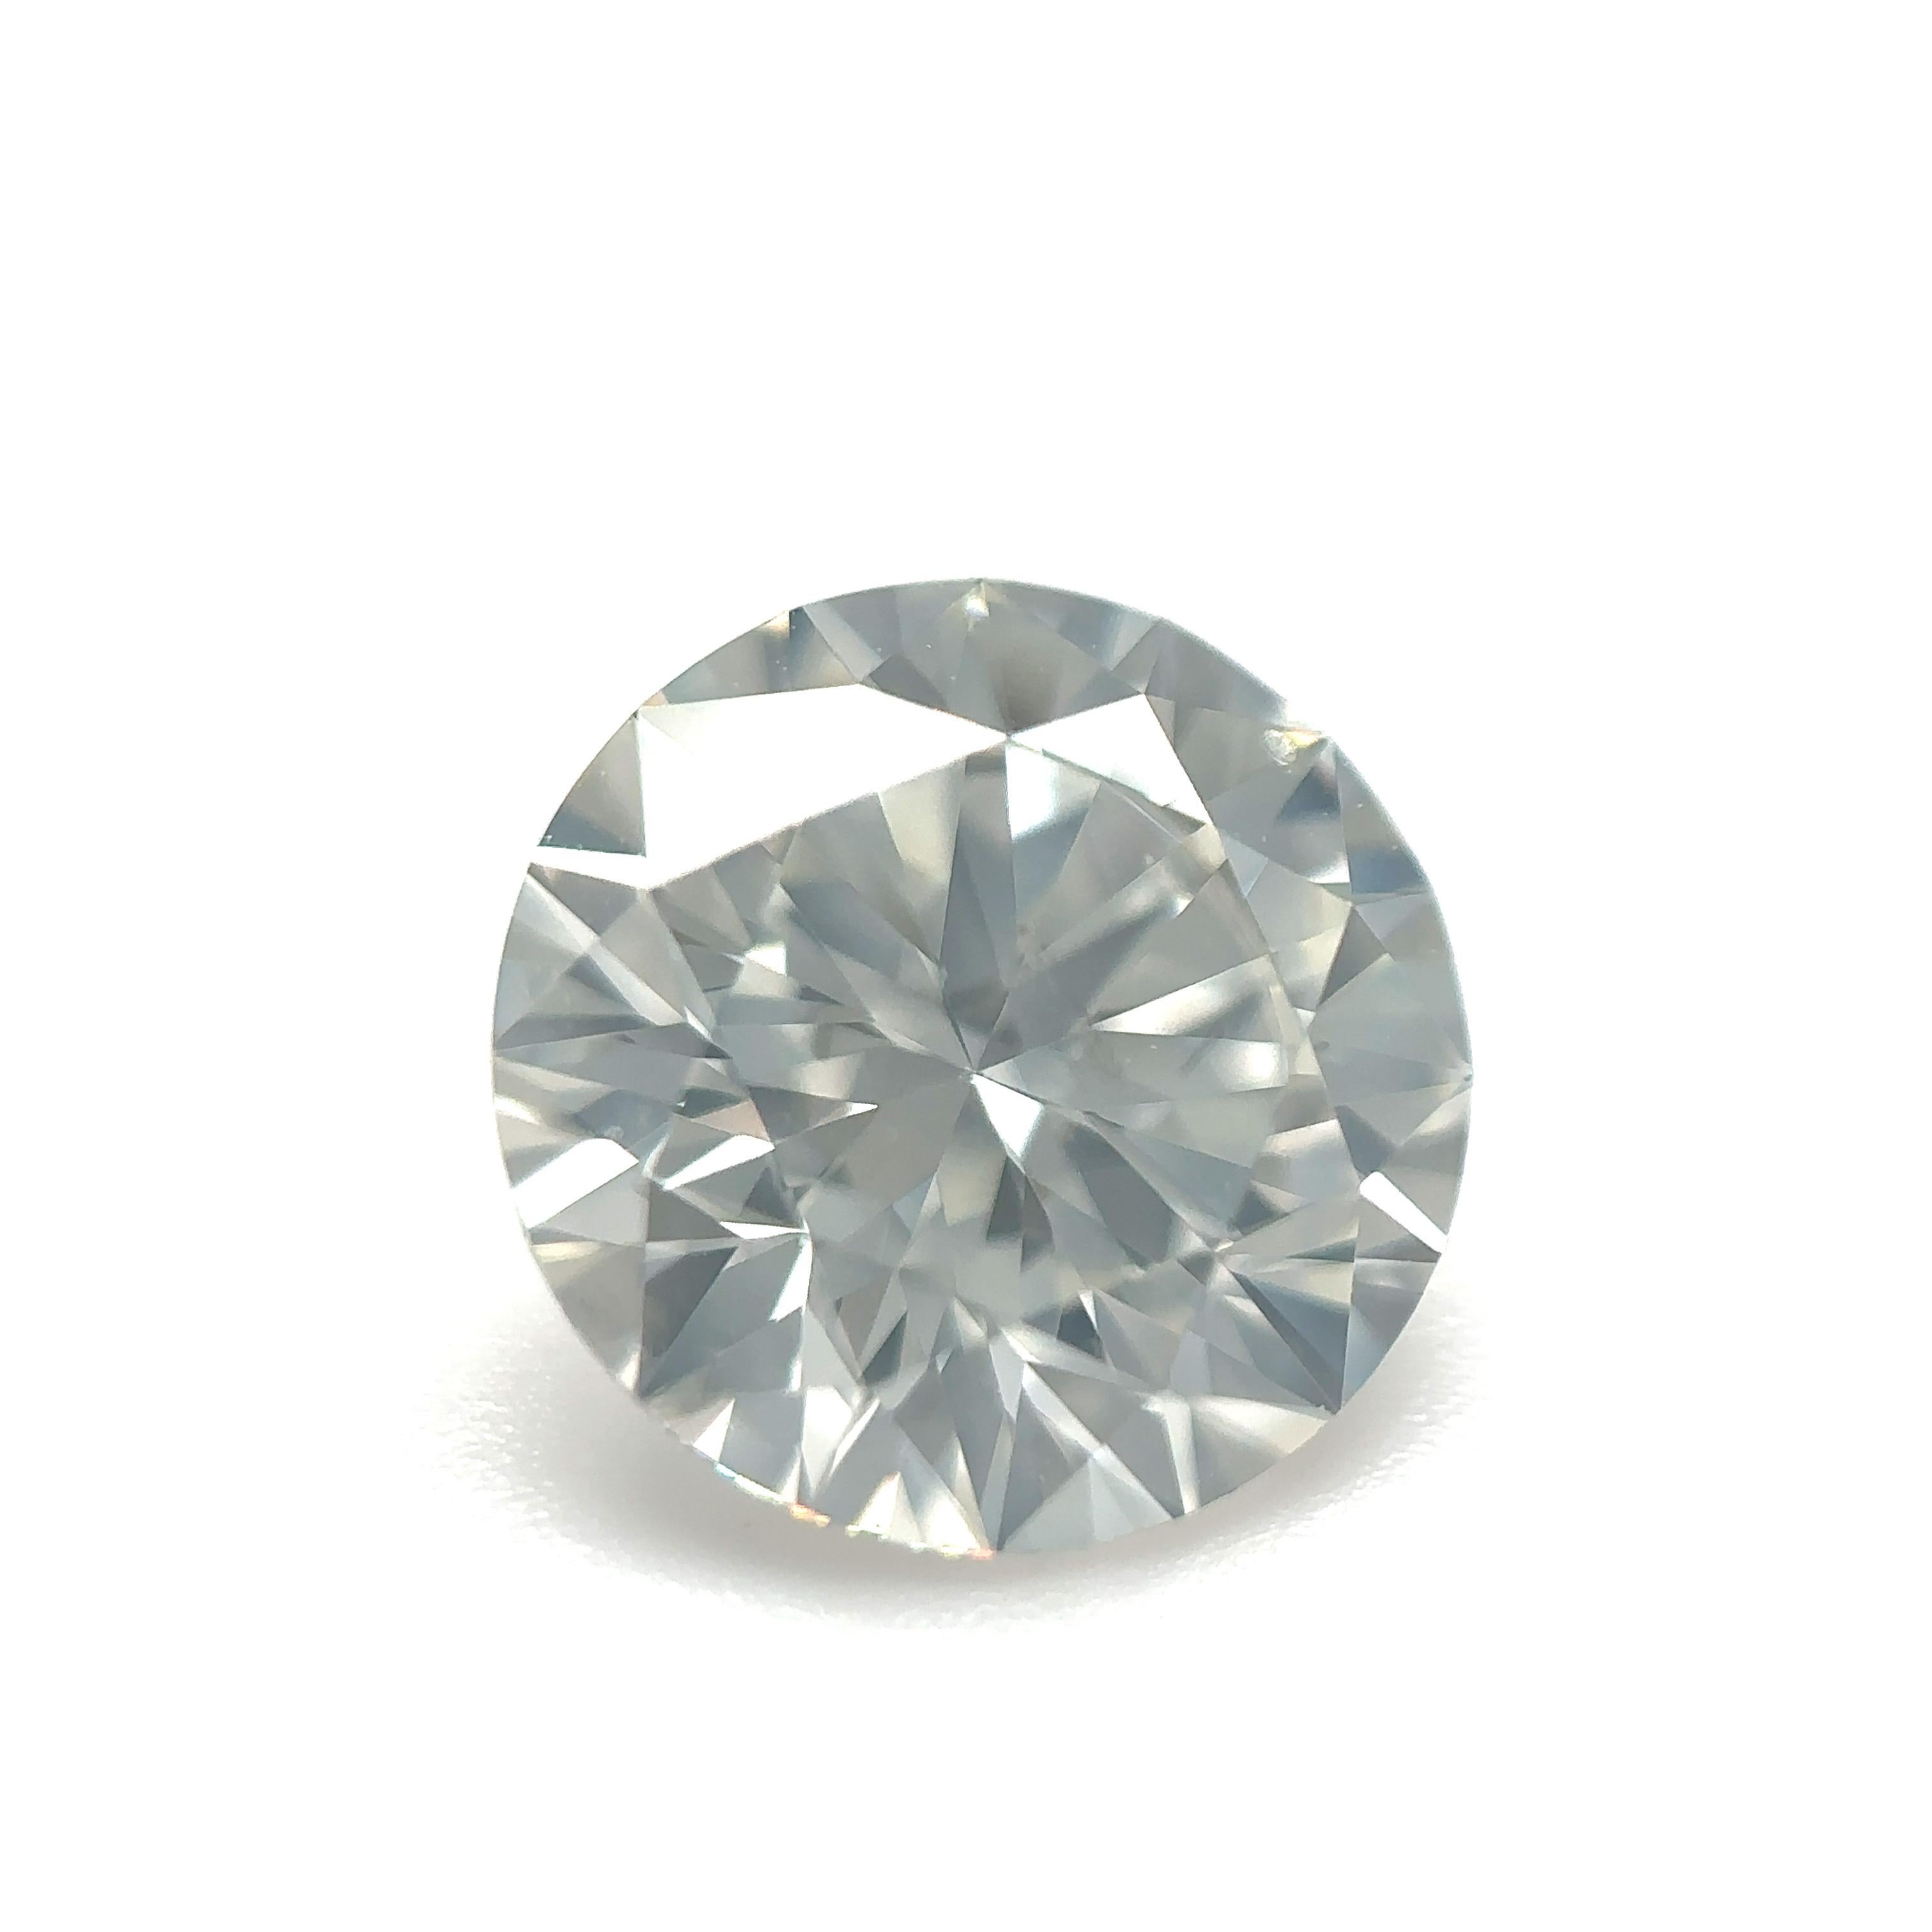 GIA Certified 1.78 Carat Round Brilliant Diamond Loose Stone (Customization Option)

Couleur : J
Clarté : SI1 

Idéal pour les bagues de fiançailles, les alliances, les colliers et les boucles d'oreilles en diamant. Contactez-nous pour personnaliser